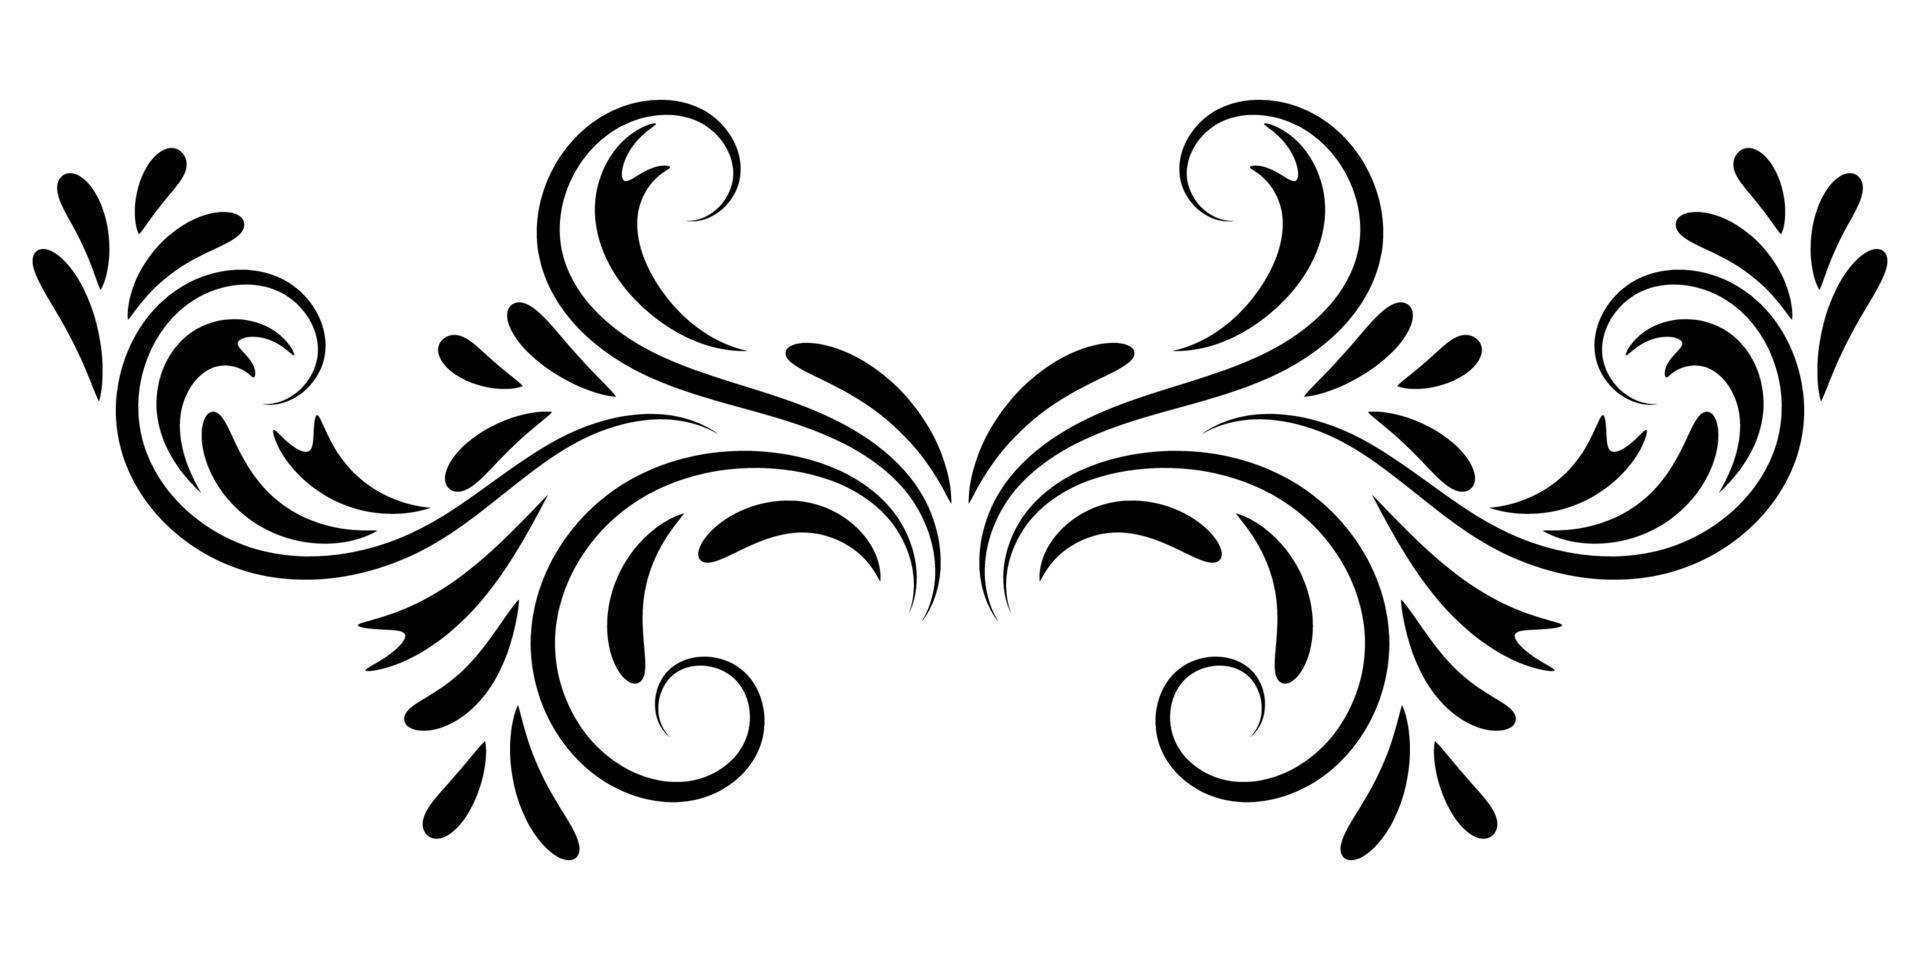 zwart abstract krullend element voor ontwerp, swirl, curl. scheidingslijn, frame geïsoleerd op een witte achtergrond. vector